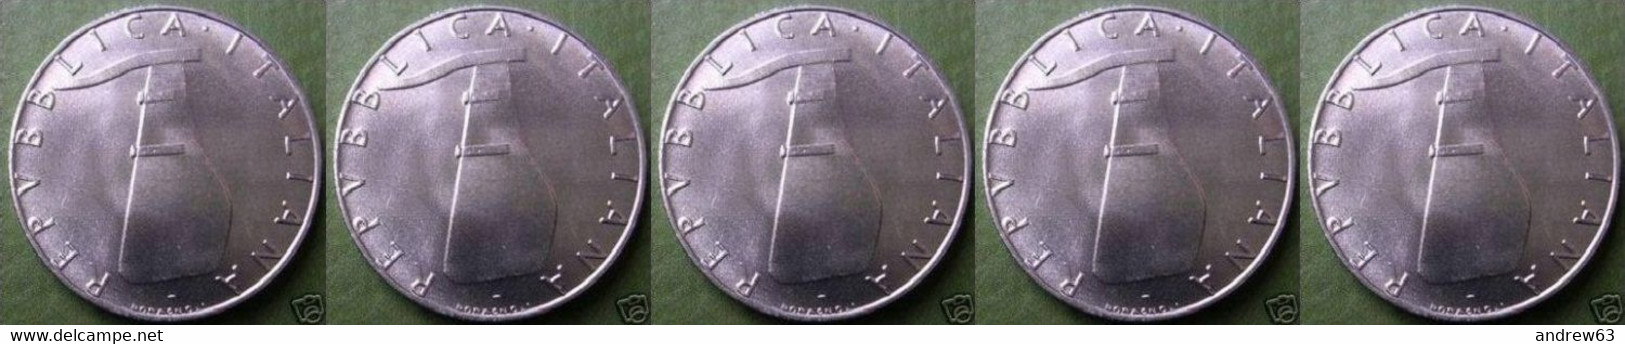 ITALIA - Lire 5 1984 - FDC/Unc Da Rotolino/from Roll 5 Monete/5 Coins - 5 Lire